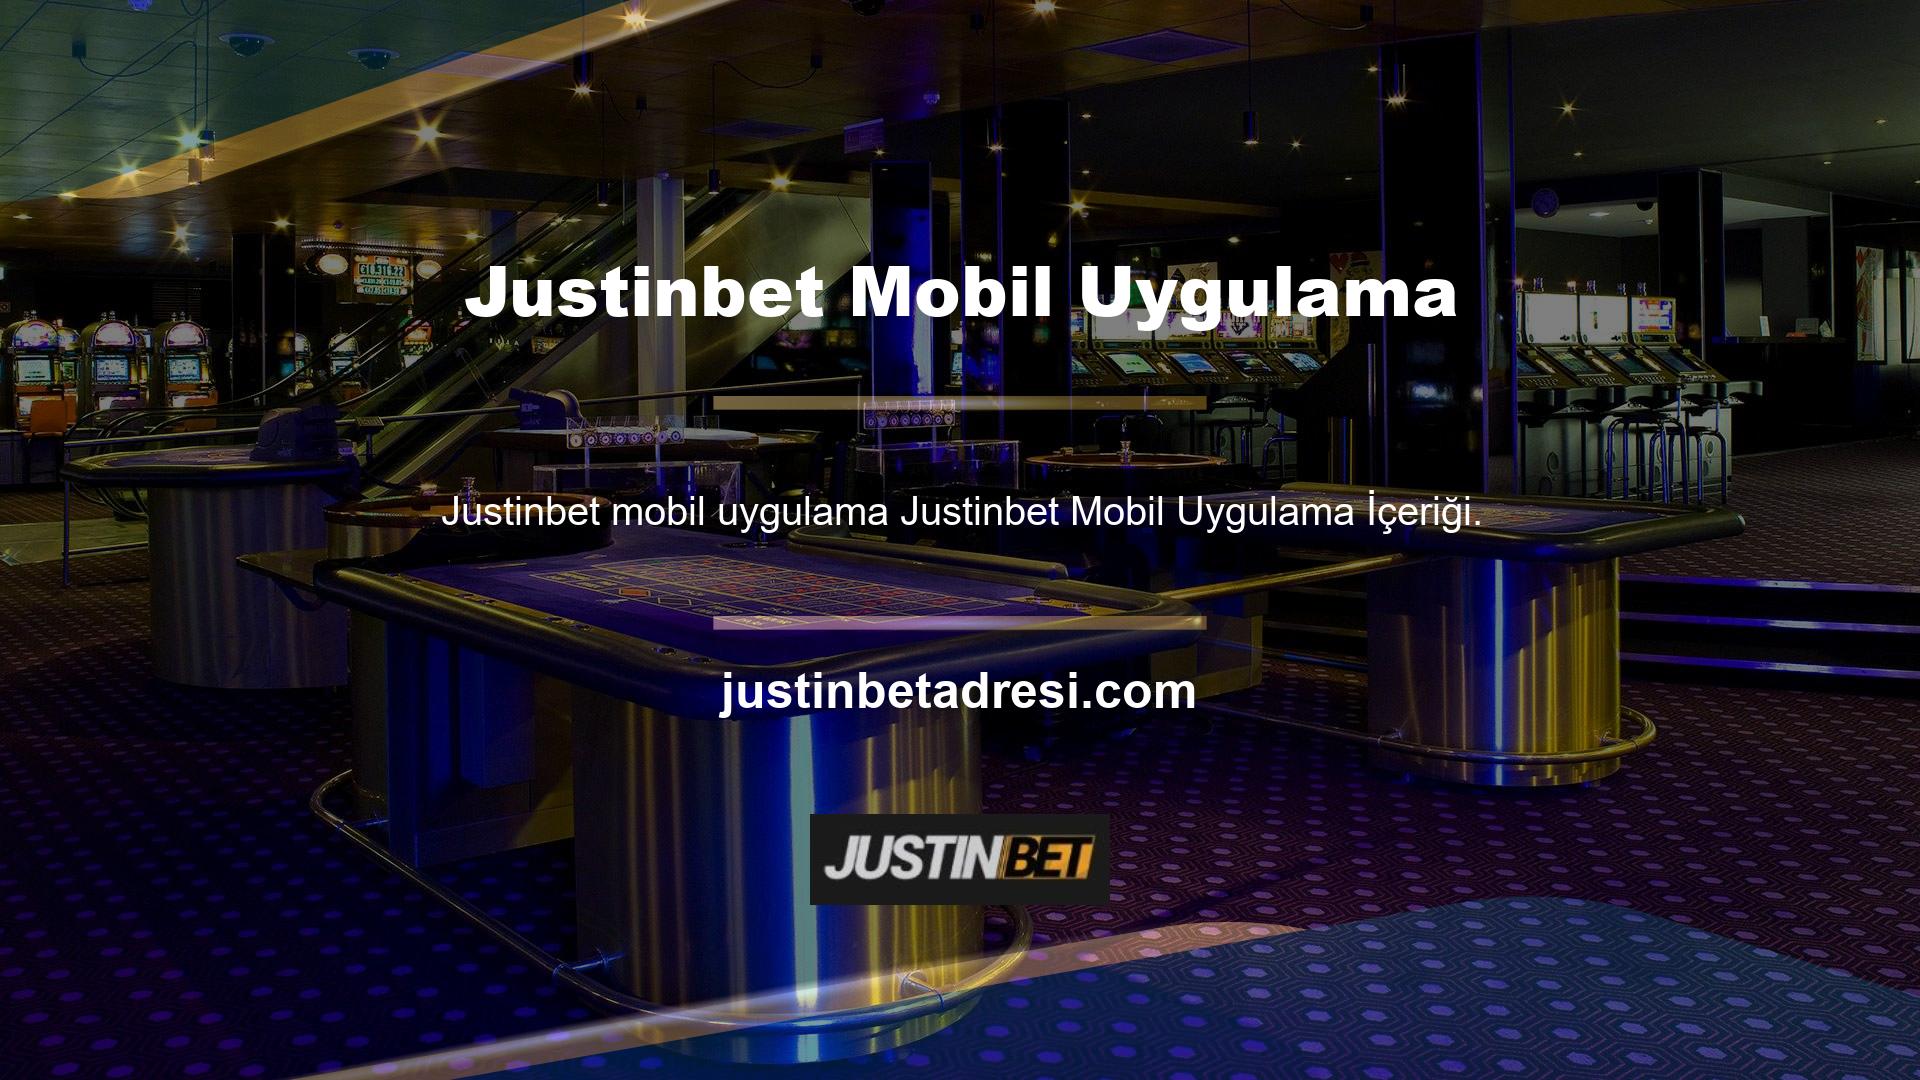 Justinbet bahis kulübü, mobil bahis mağazasında üyelerine ek bir fırsat sunuyor